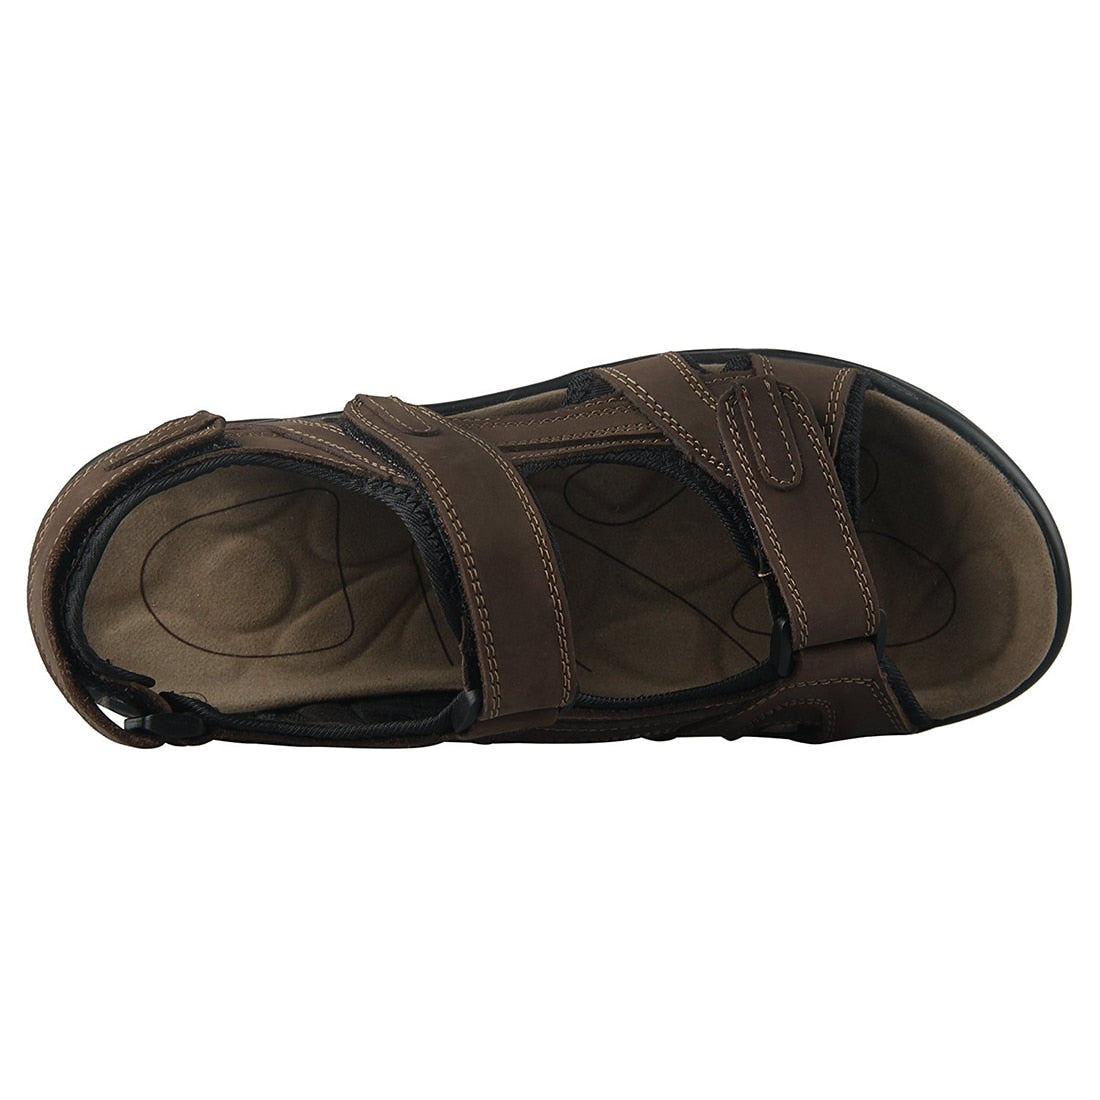 New Men's sandals Leather sandals men leather Shoes - ebowsos